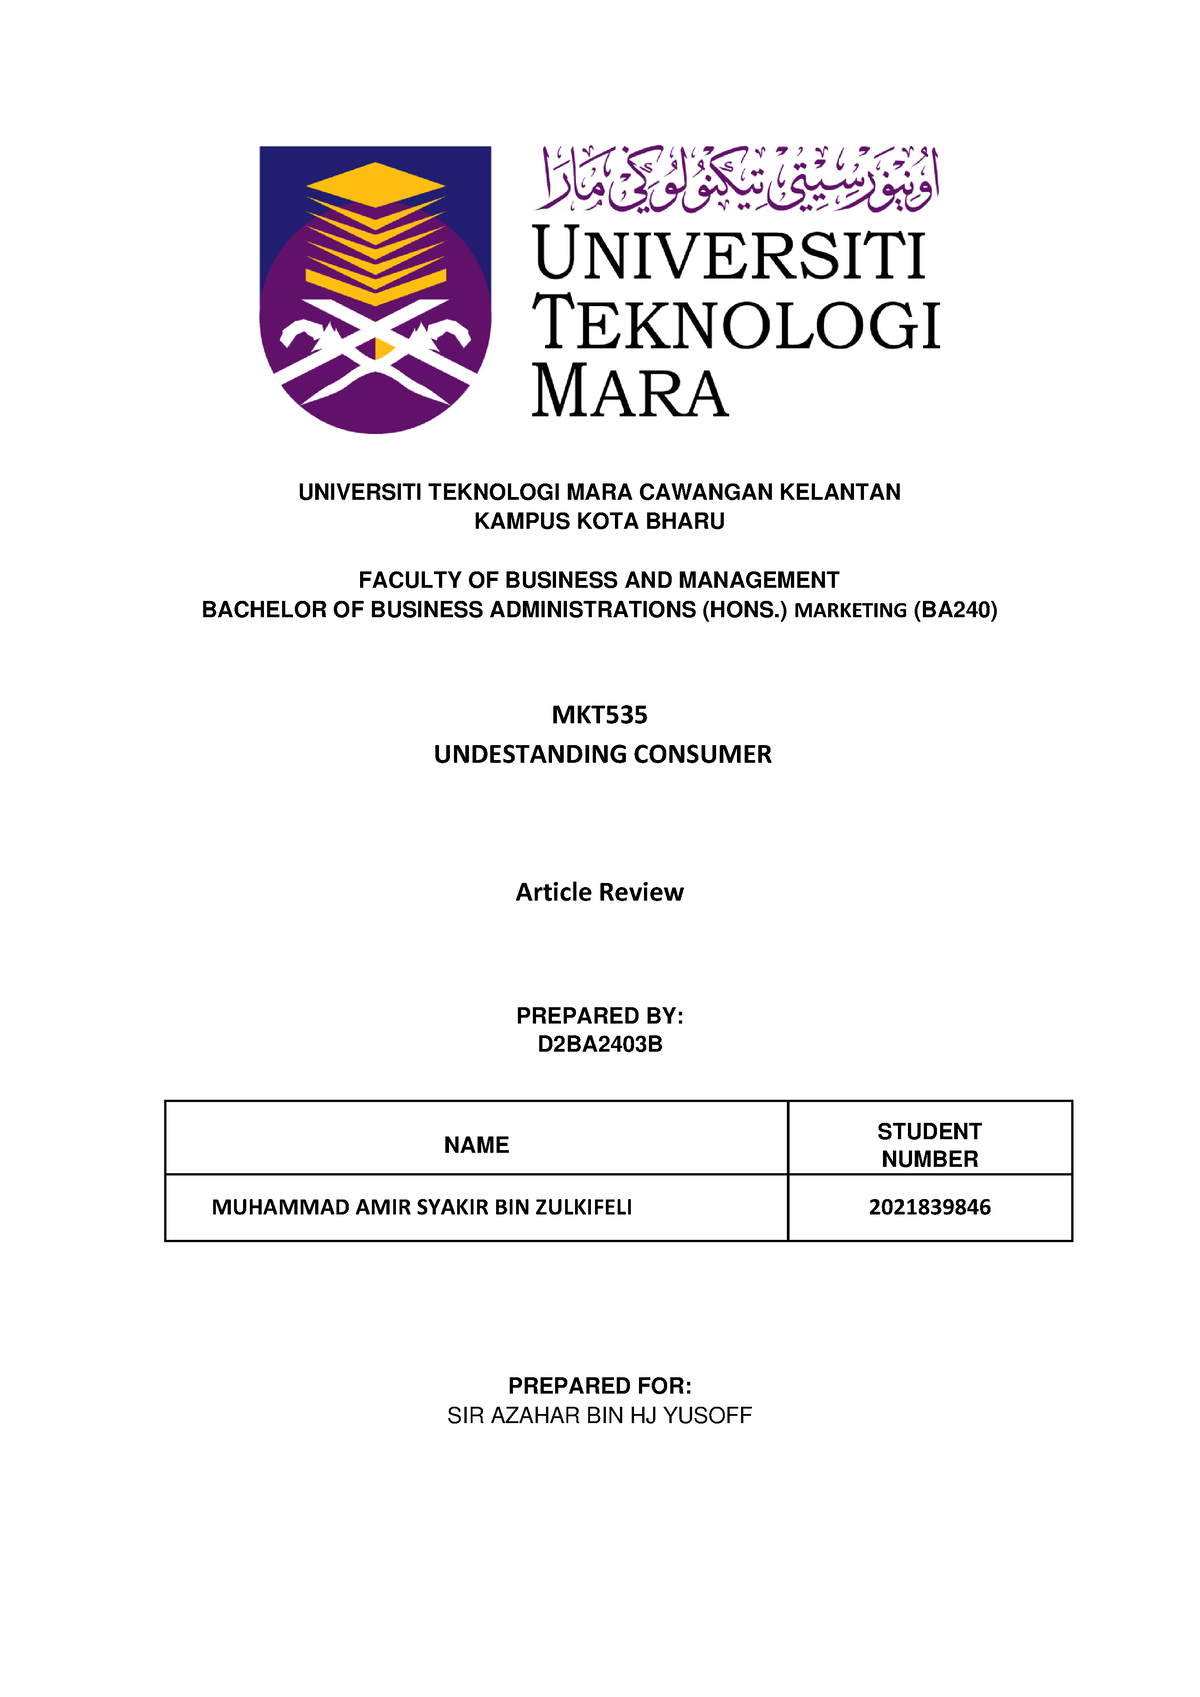 Article Review Mkt Universiti Teknologi Mara Cawangan Kelantan